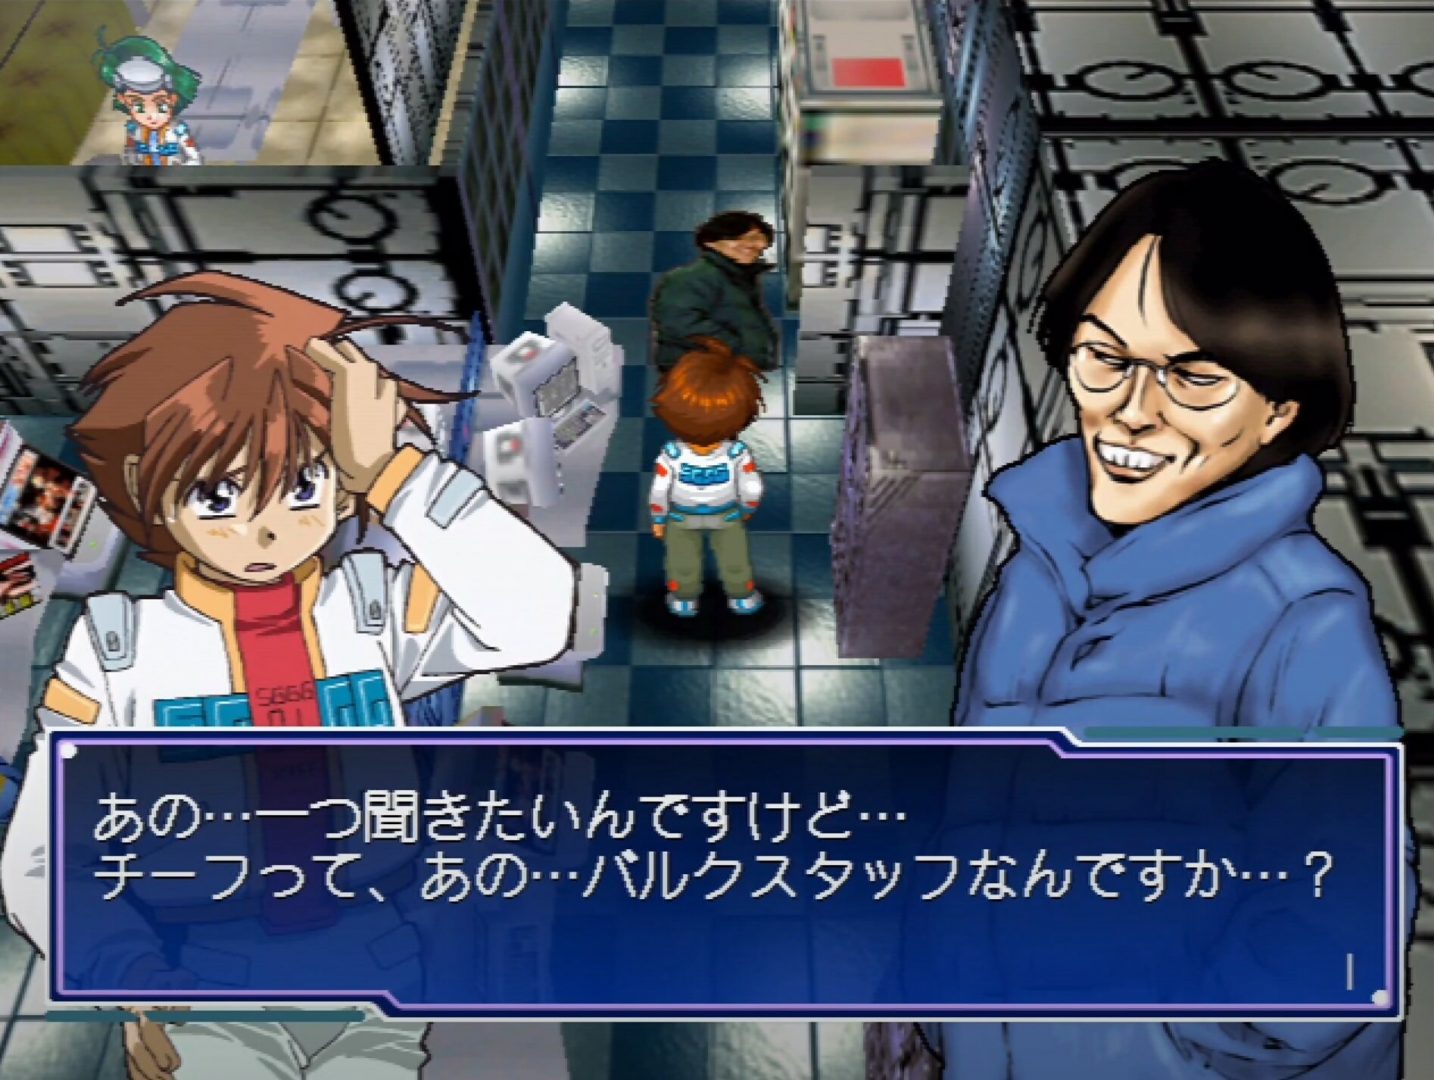 Segagaga gameplay screenshot